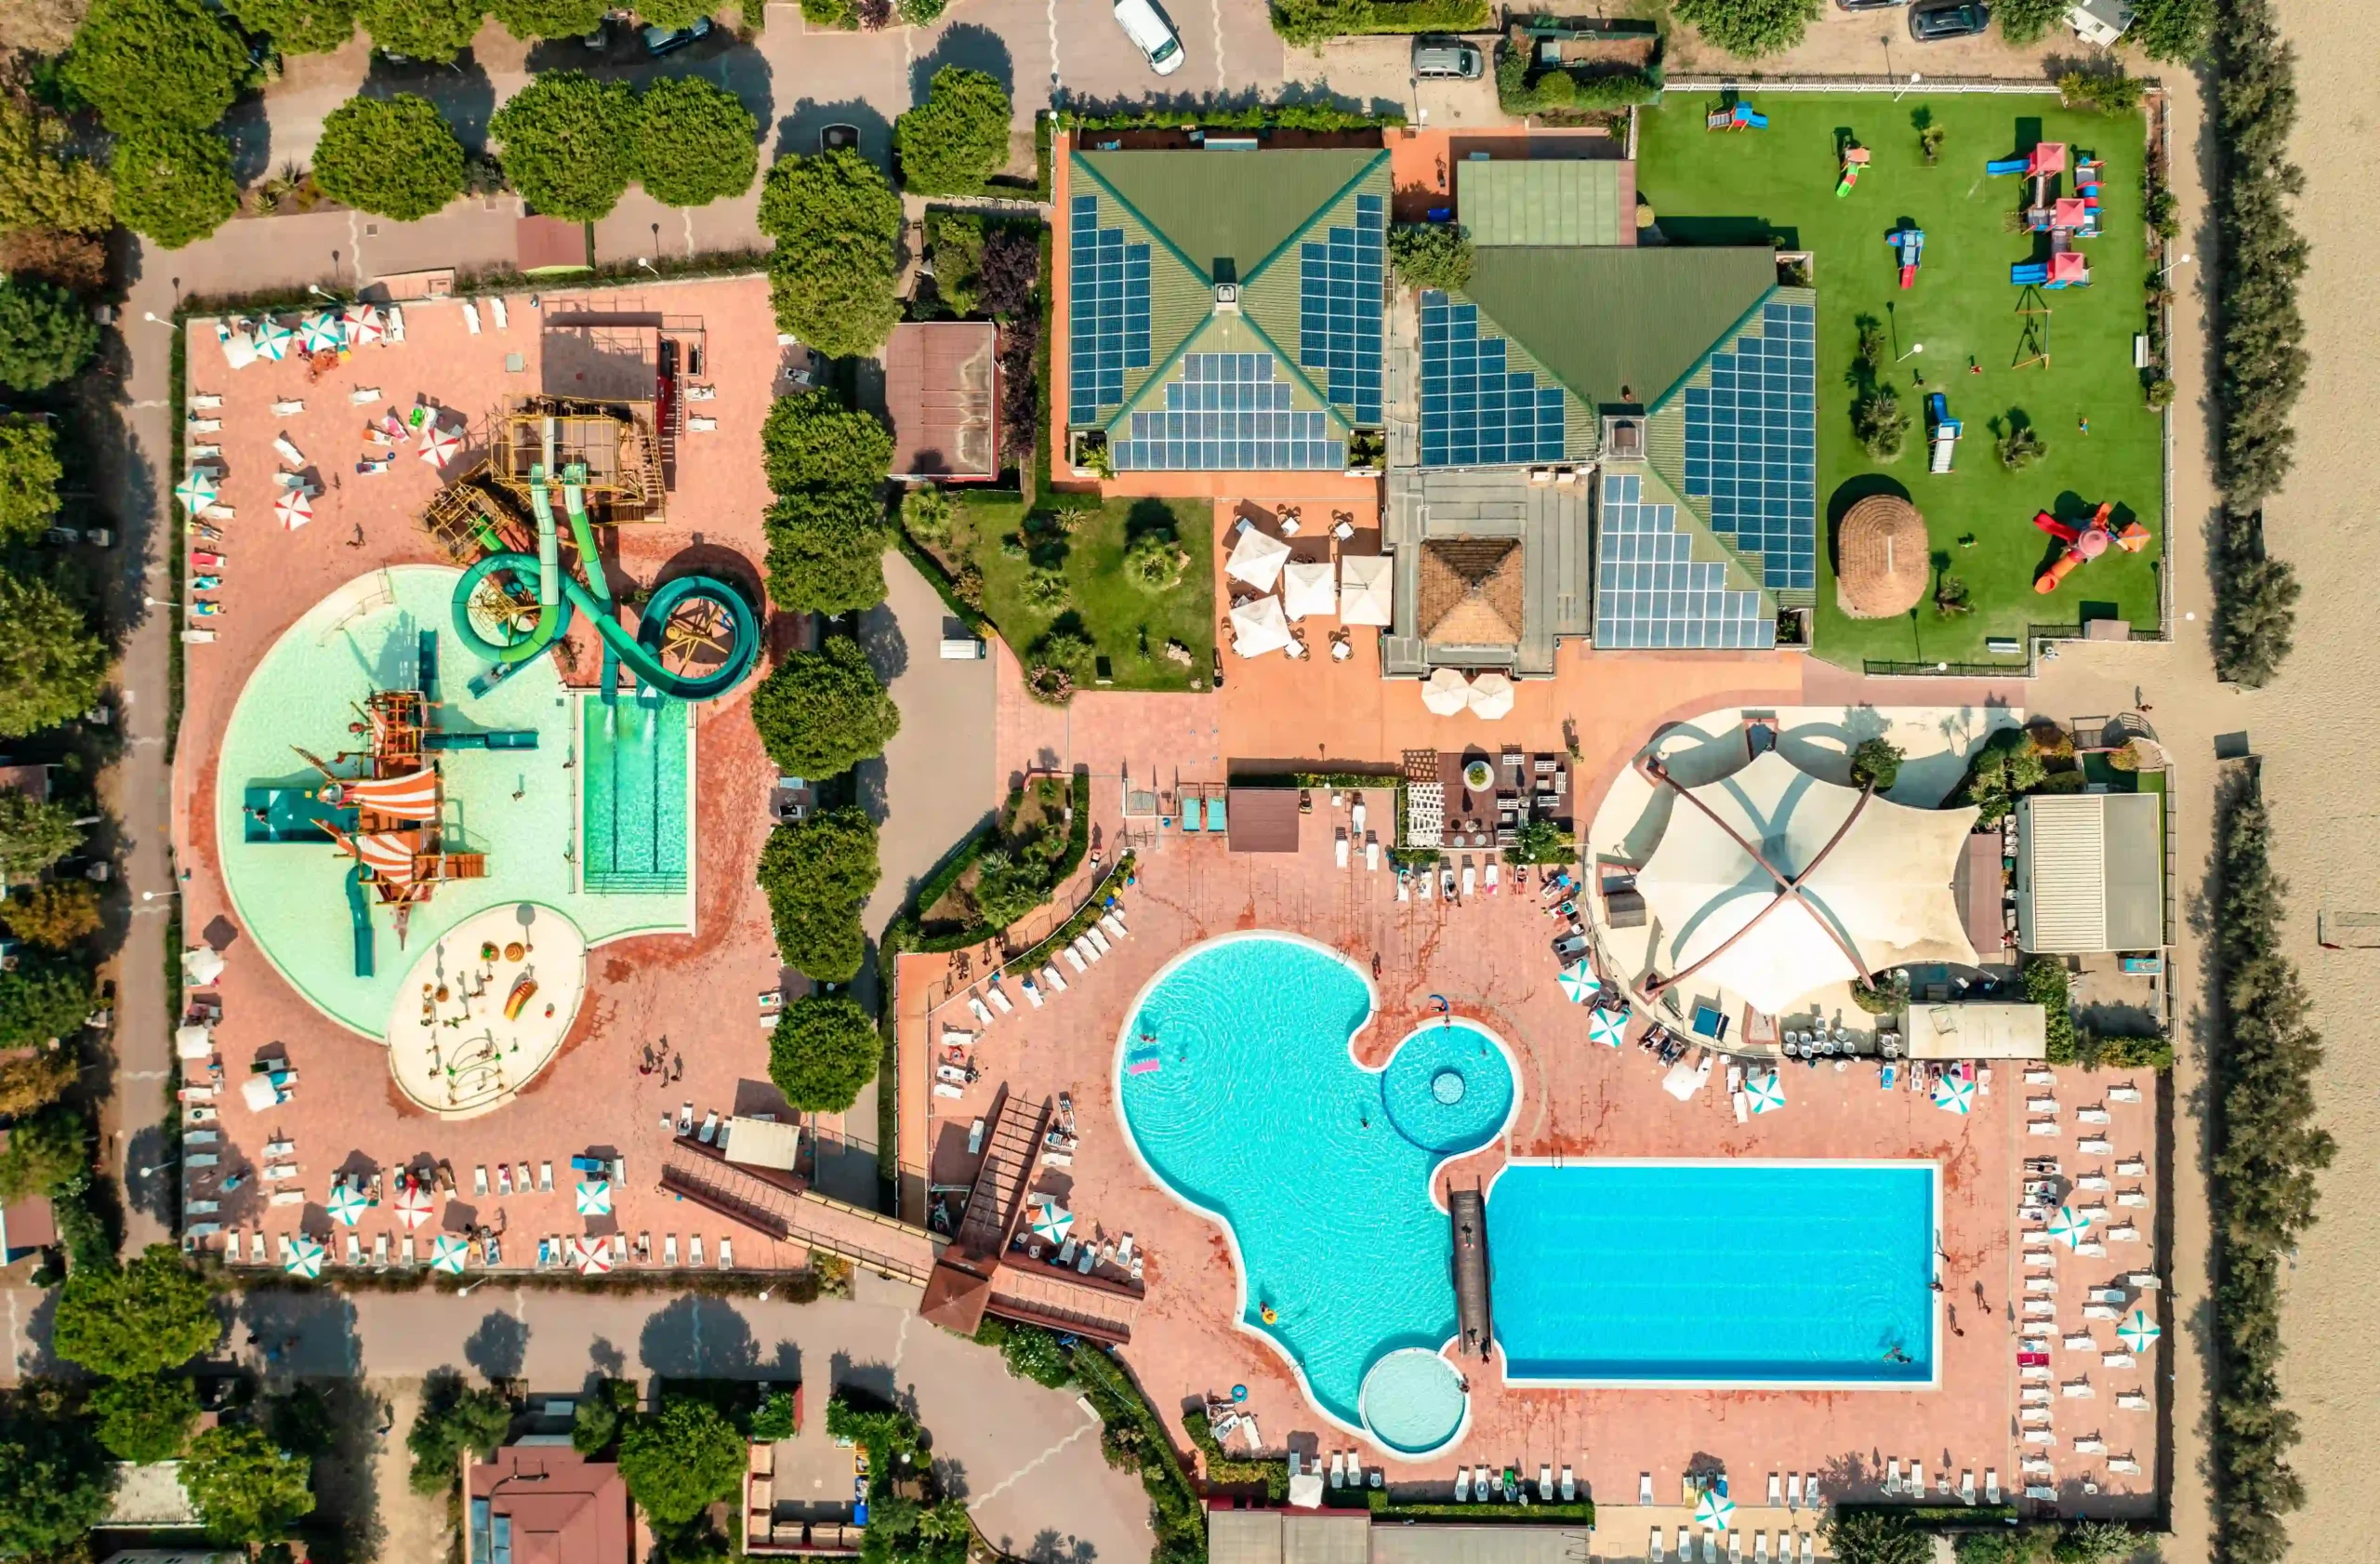 Veduta aerea di un complesso turistico con piscine, scivoli d'acqua, ombrelloni, lettini e aree verdi.